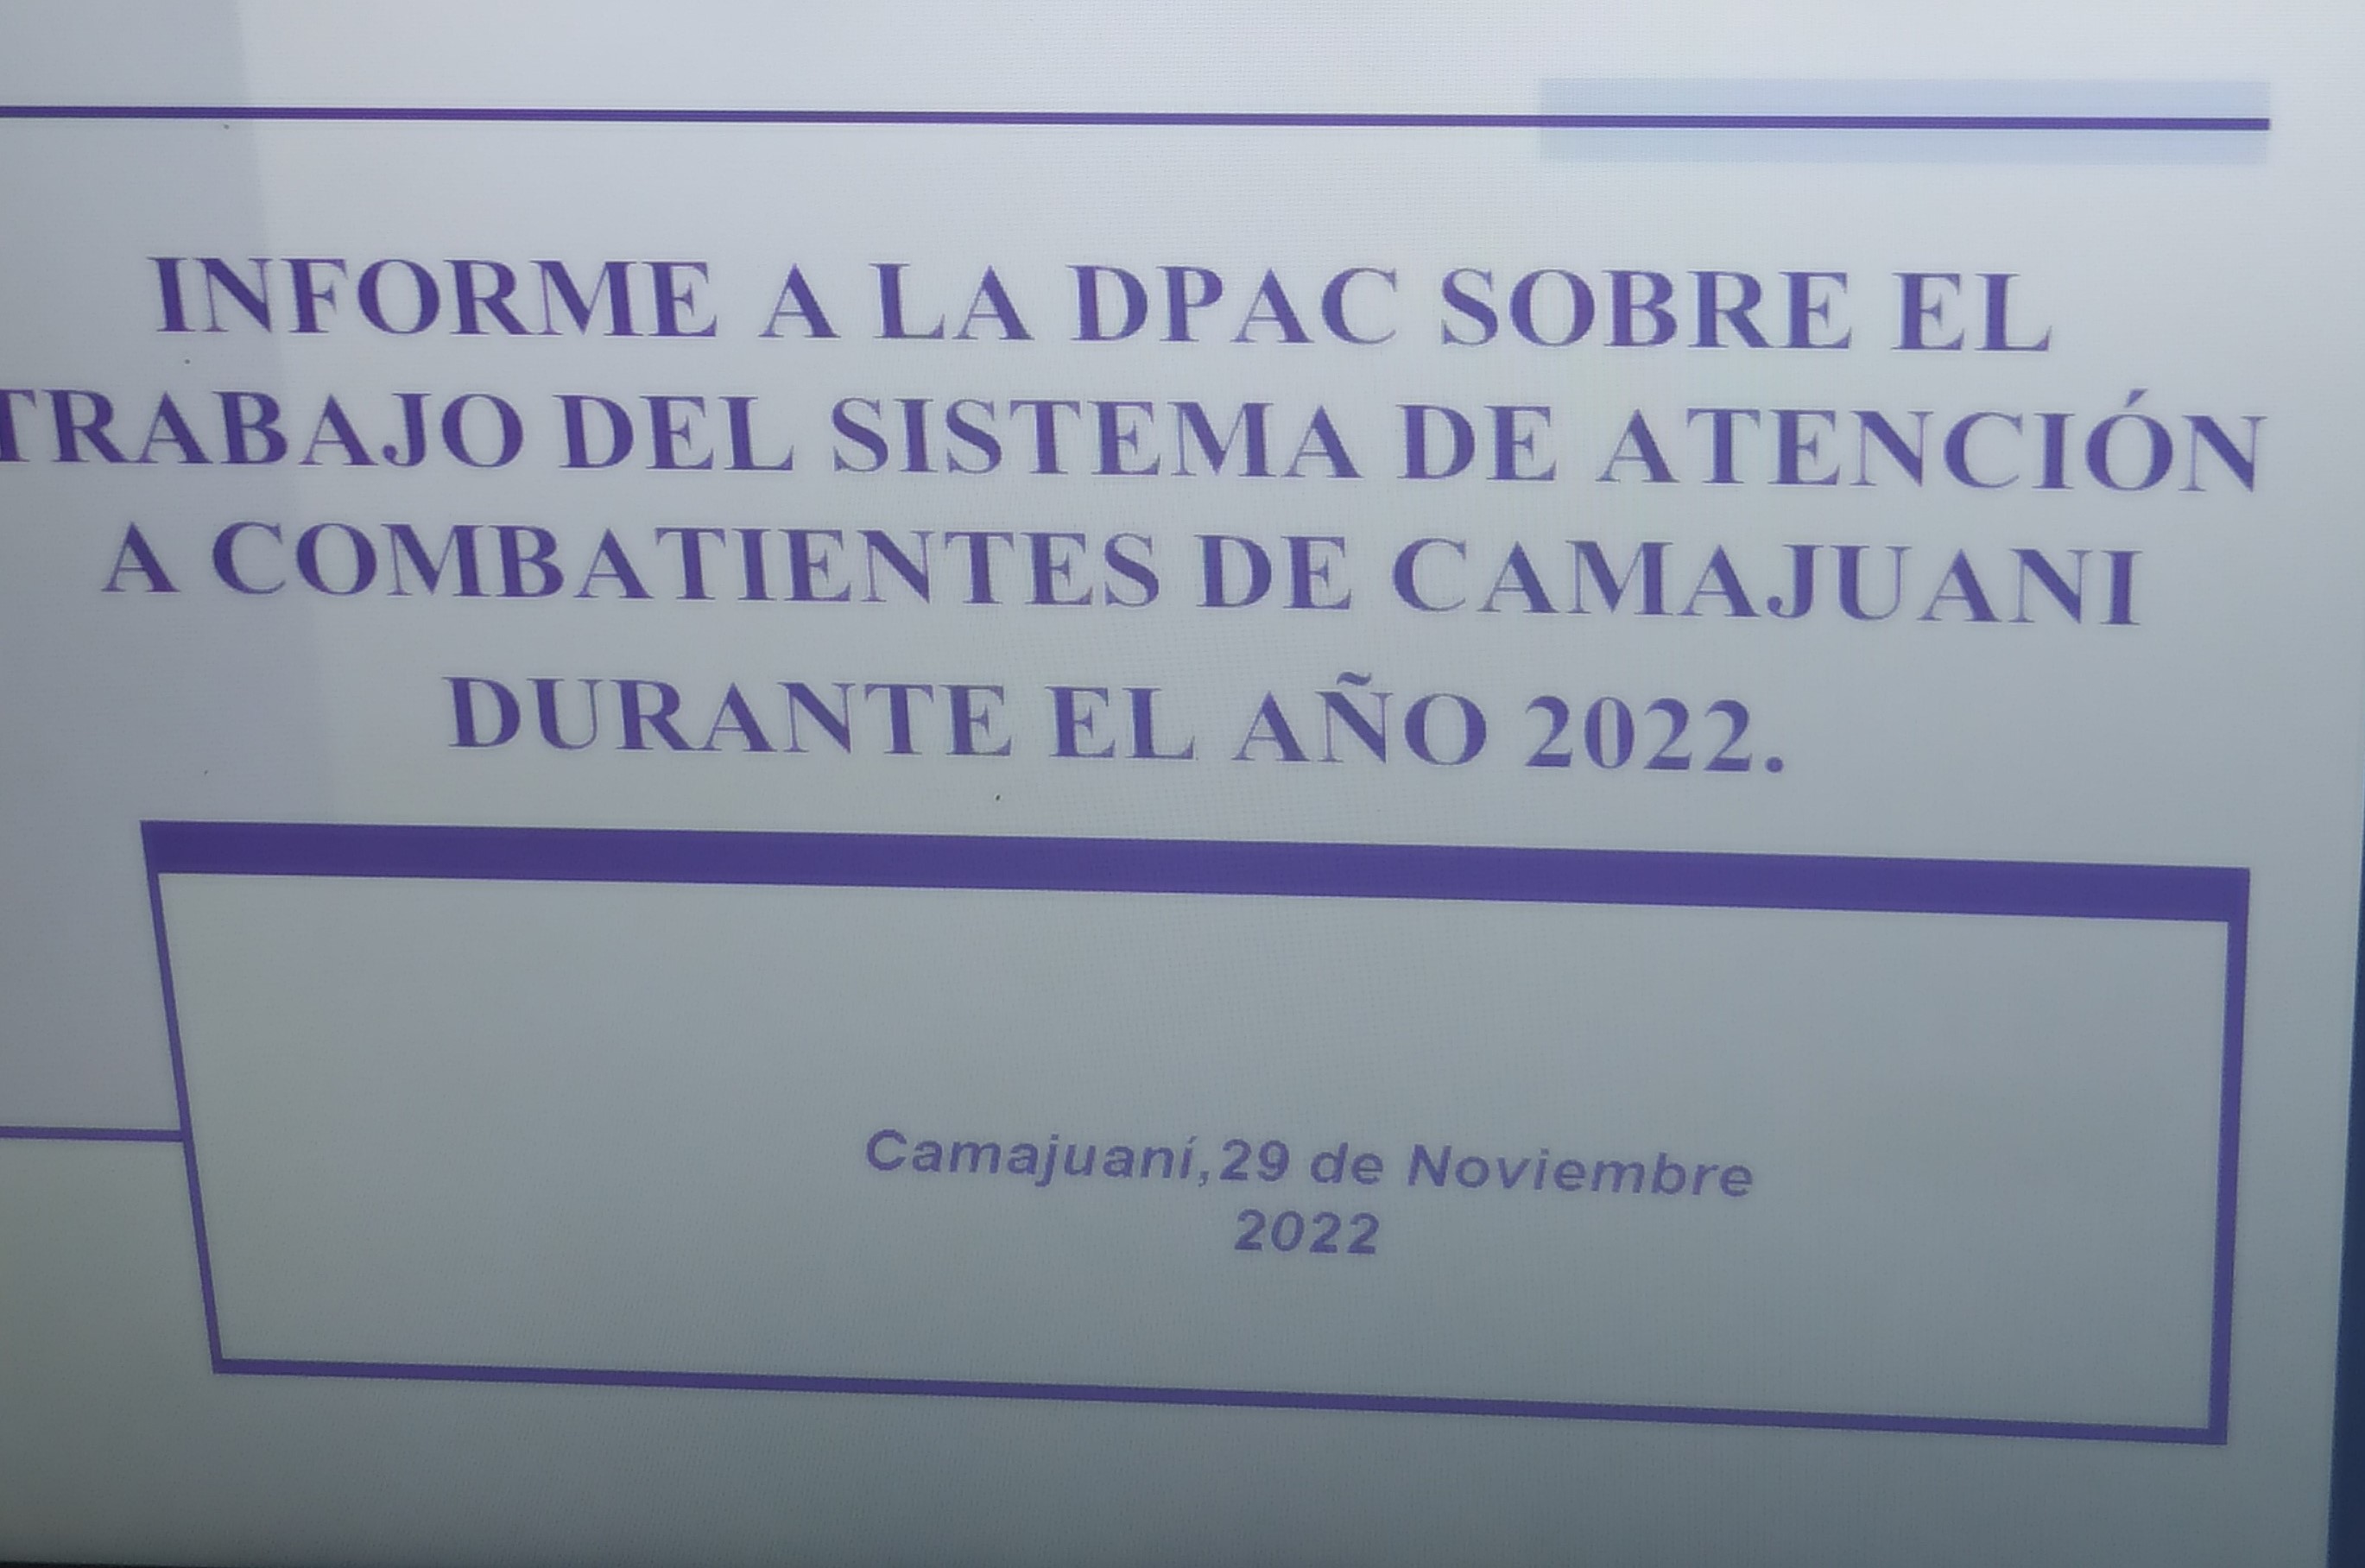 Visita la Dirección Provincial Atención a Combatientes al Municipio de Camajuaní, donde se presenta un Informe sobre el trabajo del Sistema de Atención a Combatienes durante el año 2022.